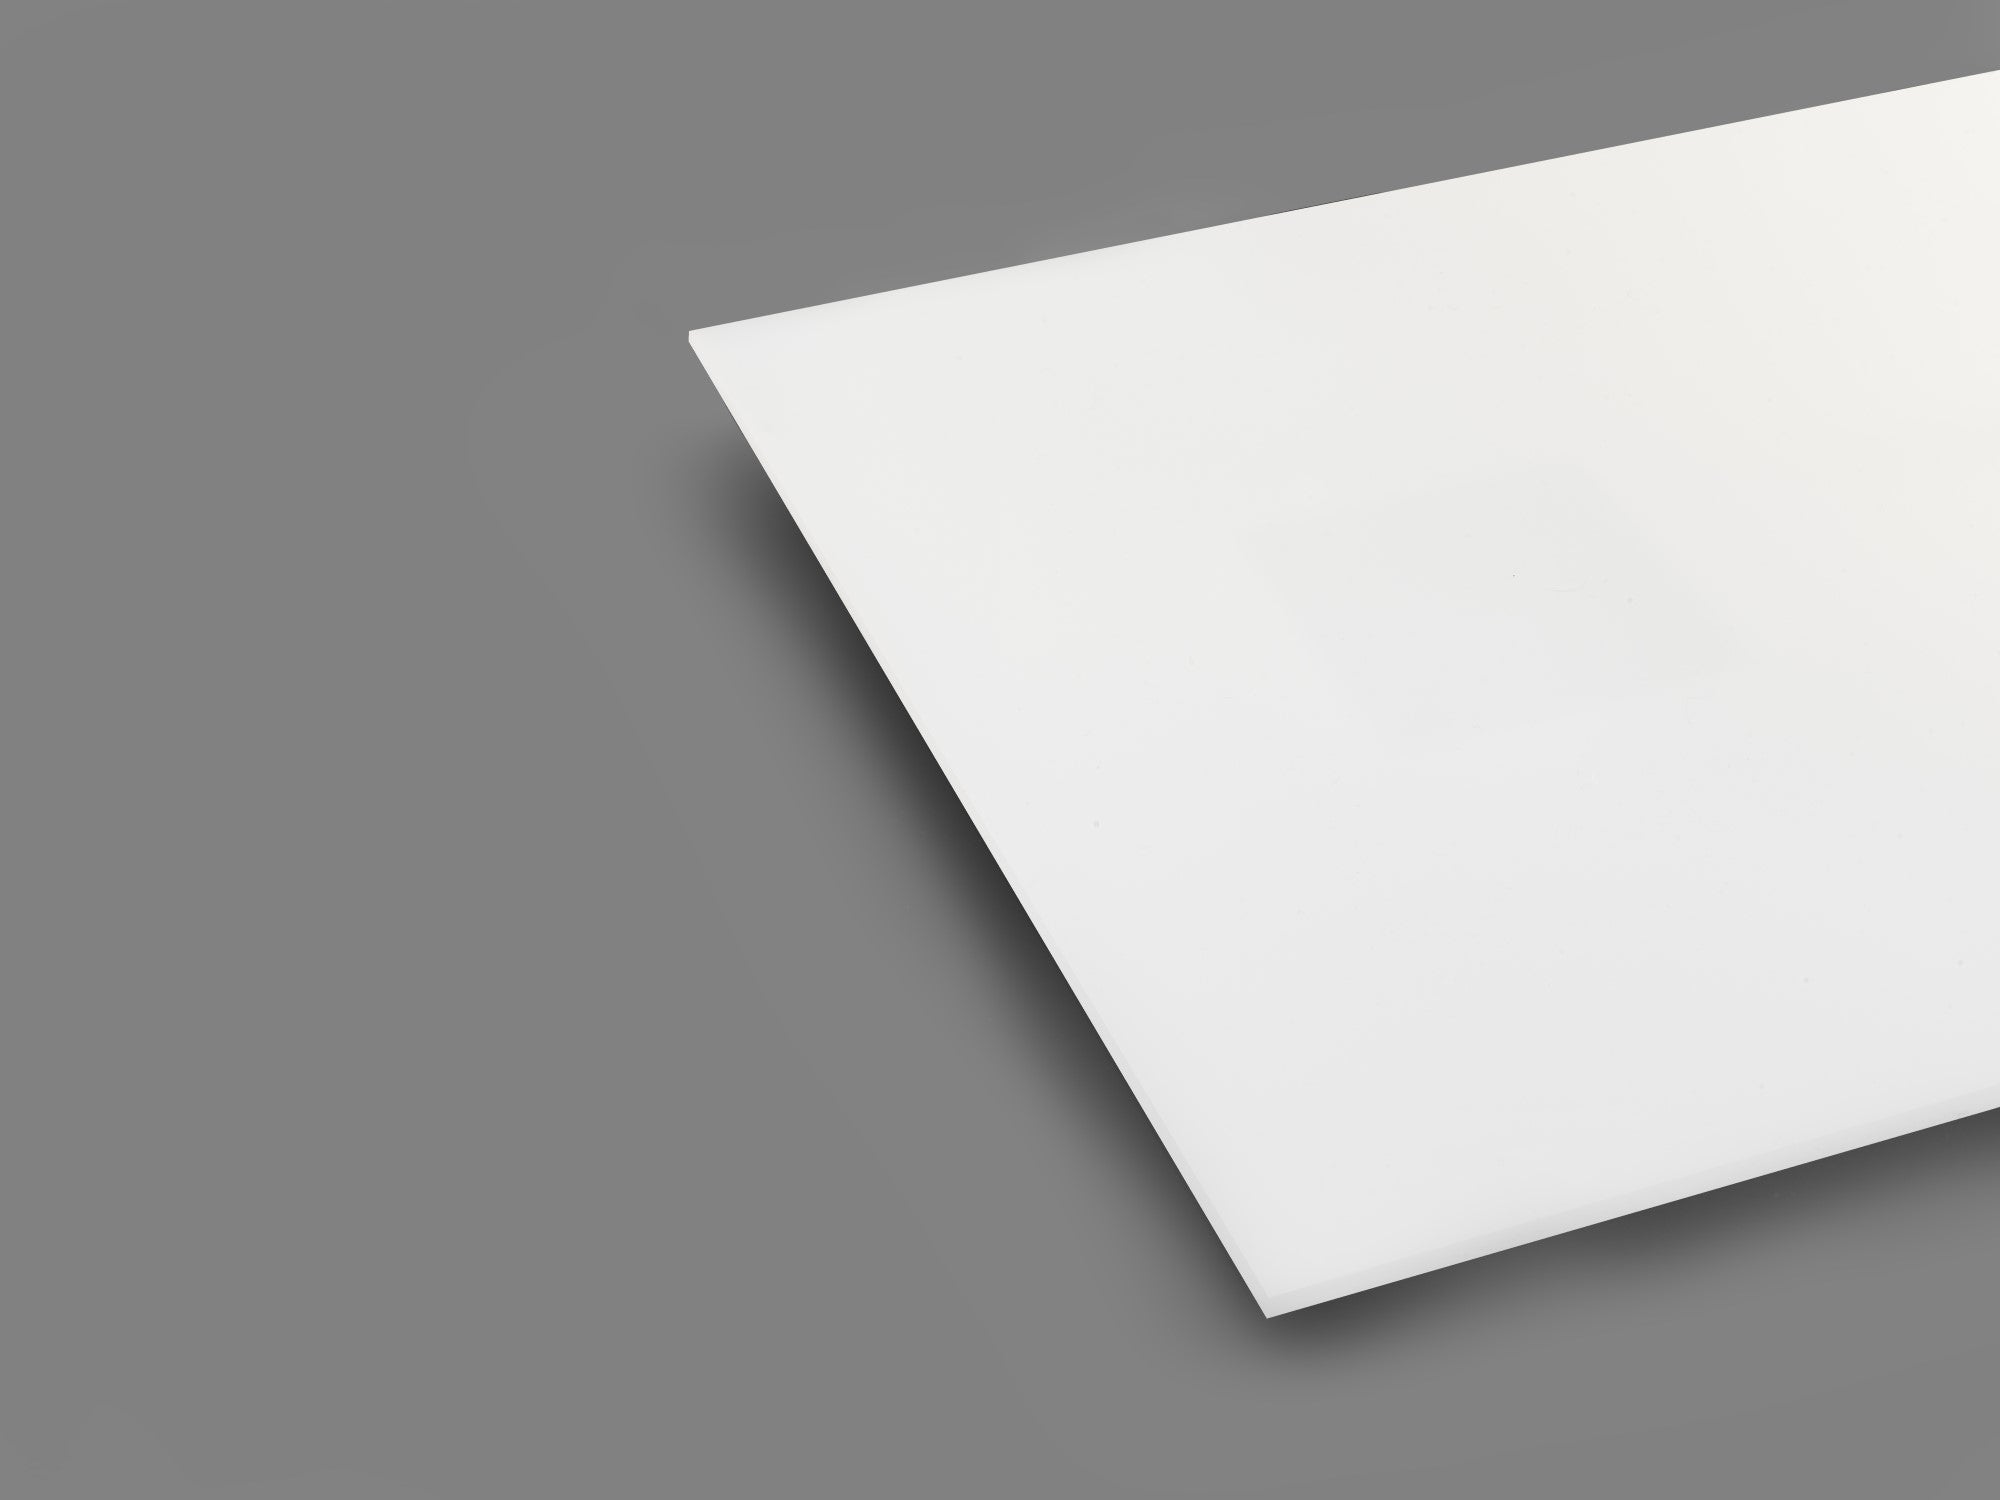 White 2447 Translucent Acrylic Sheet